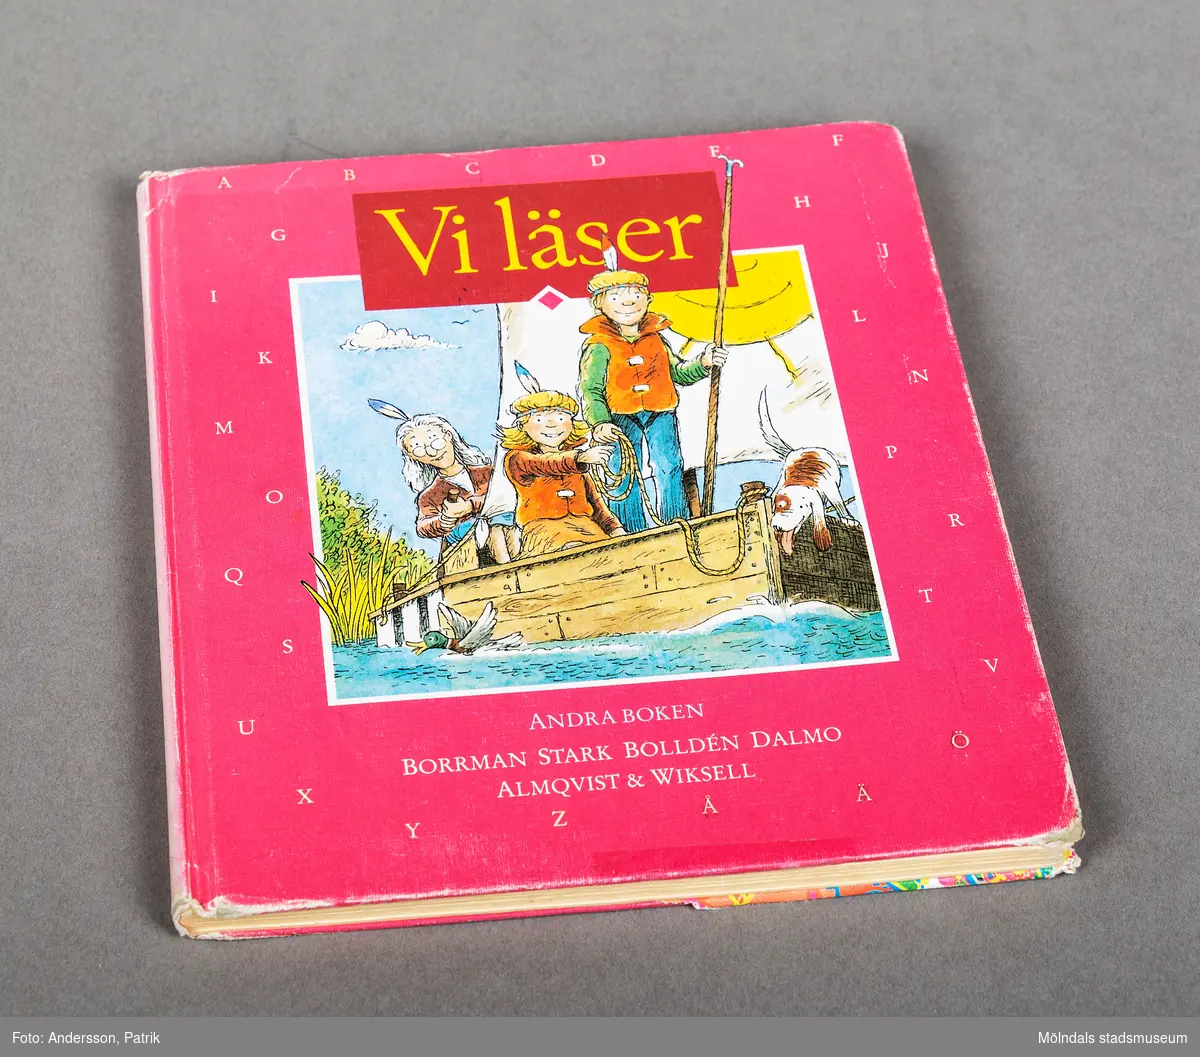 Bok: Vi läser. Andra boken. På framsidan finns en teckning av en äldre kvinna, två barn och en hund. De seglar med en flotte. Omslaget har rosa bakgrund med vita bokstäver. 

Boken innehåller enklare texter av flera olika författare och illustratörer.